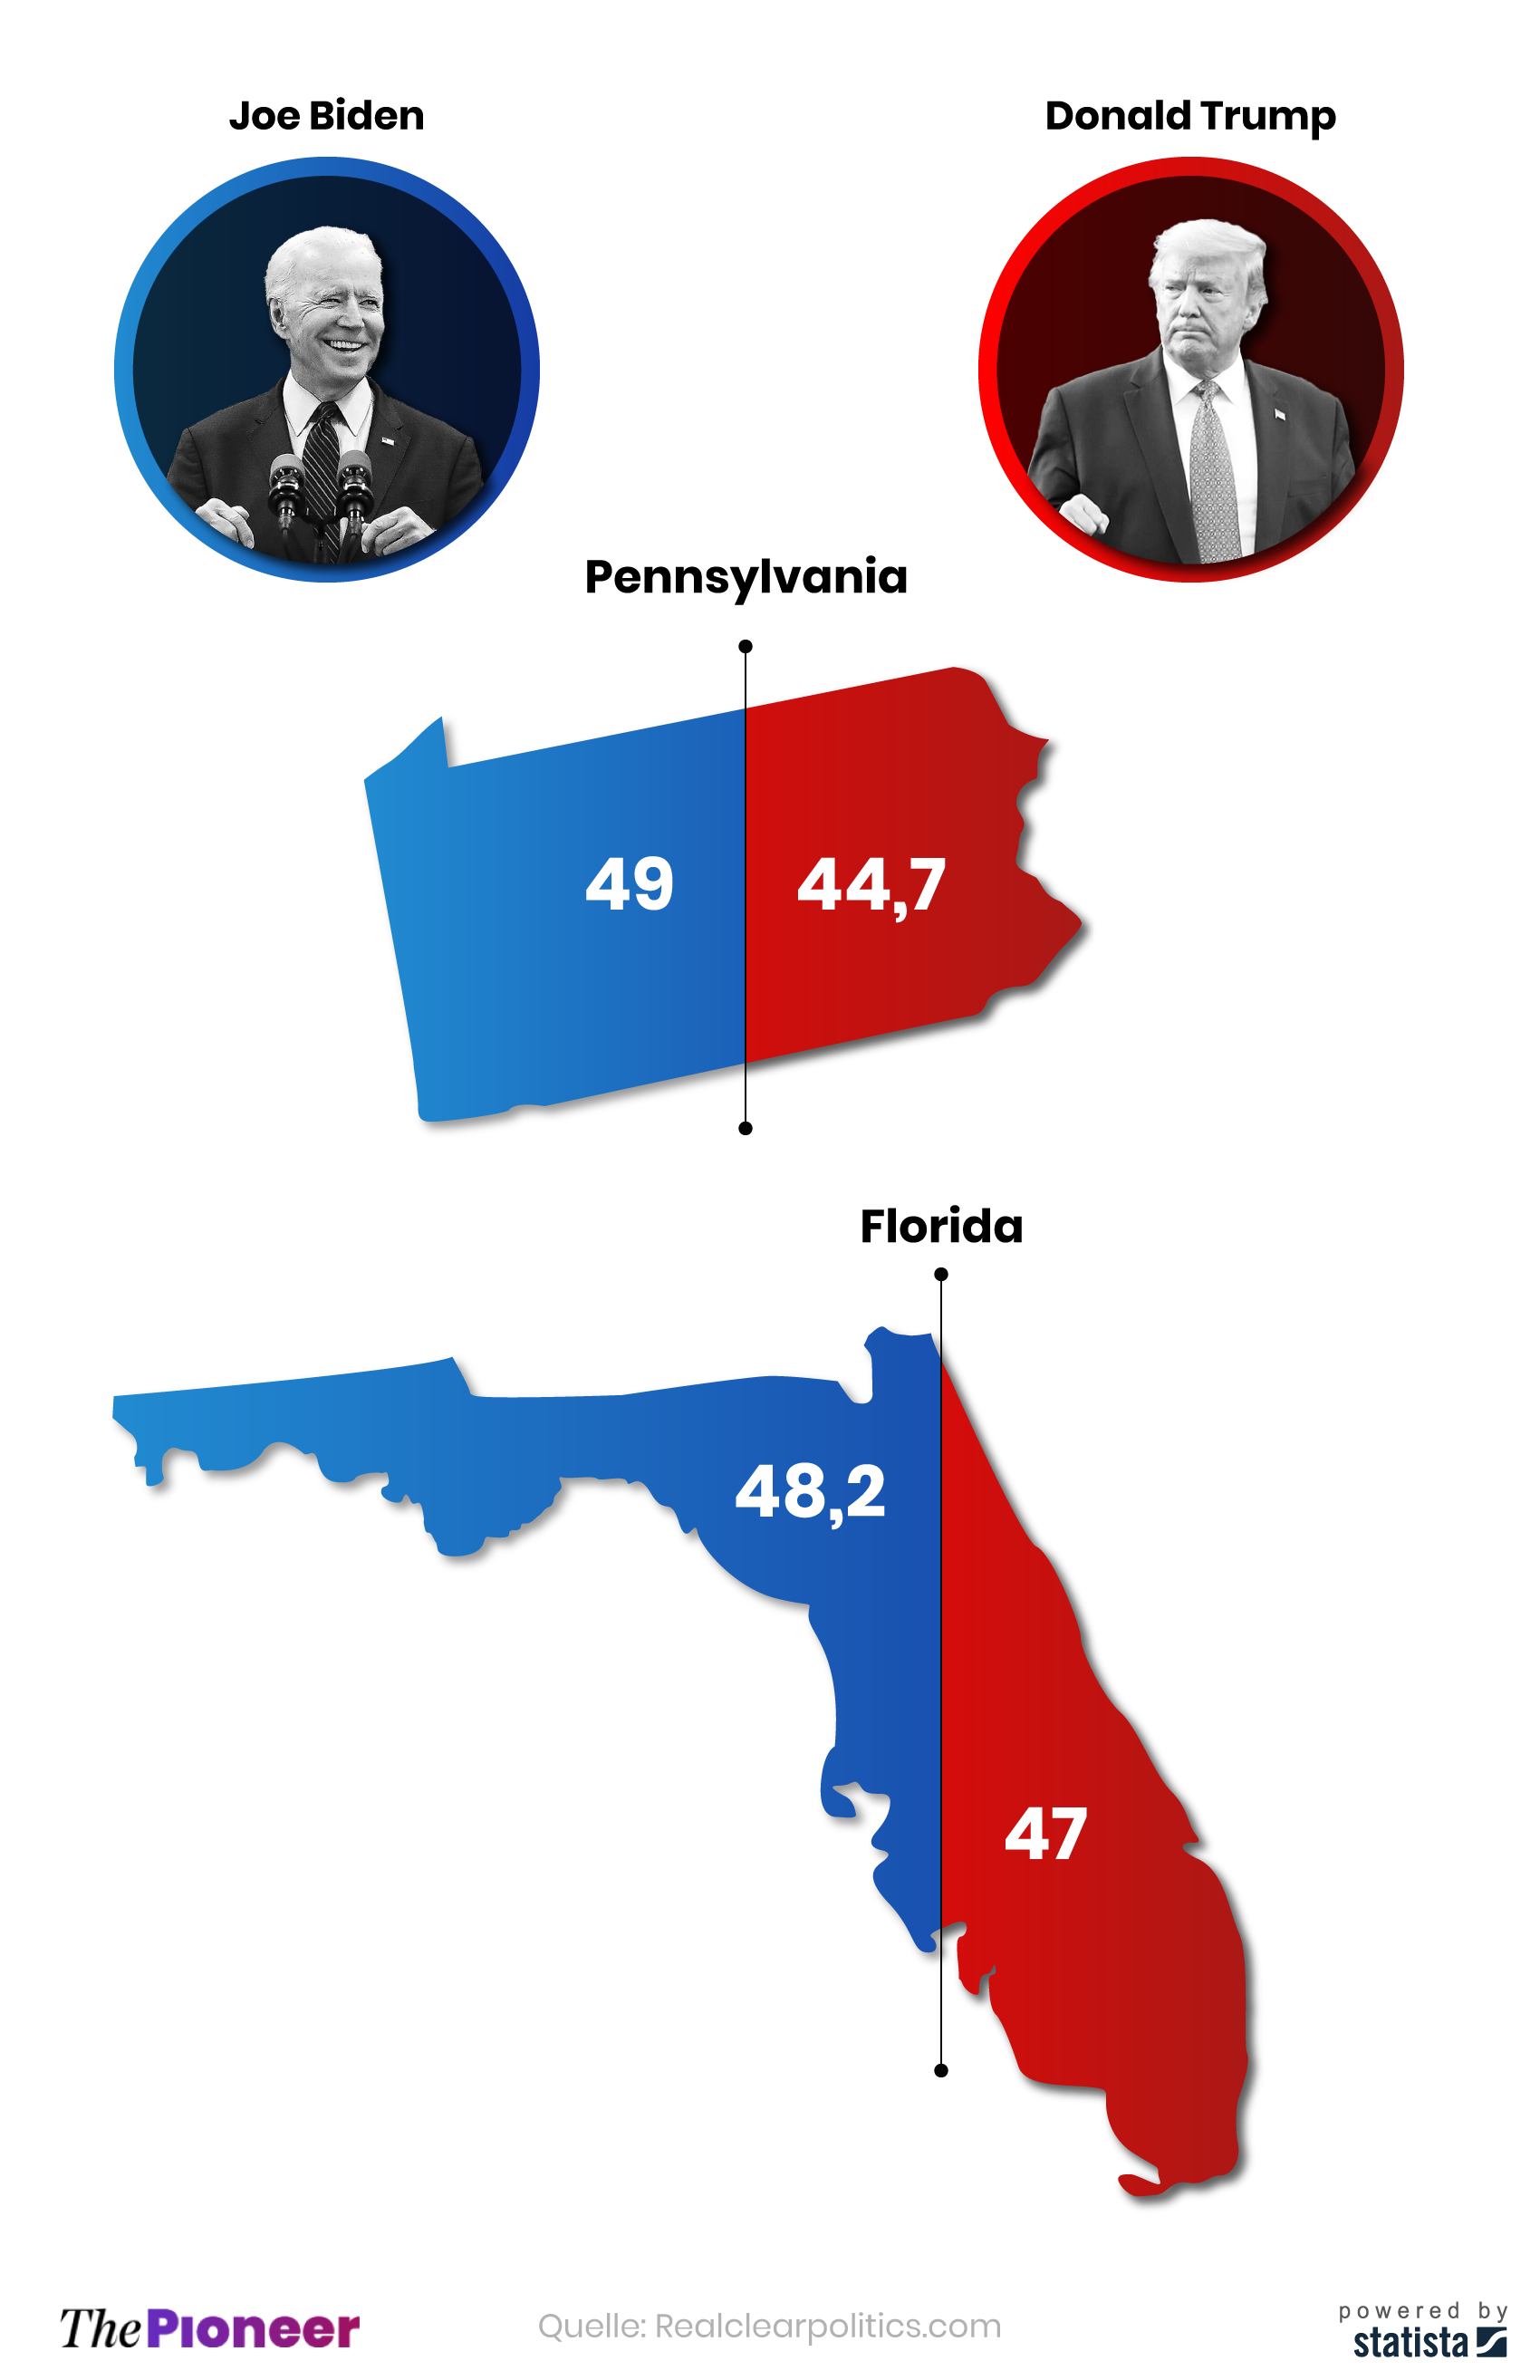 Durchschnitt aktueller Umfrageergebnisse im US-Wahlkampf in den "Swing States" Pennsylvania und Florida, in Prozent